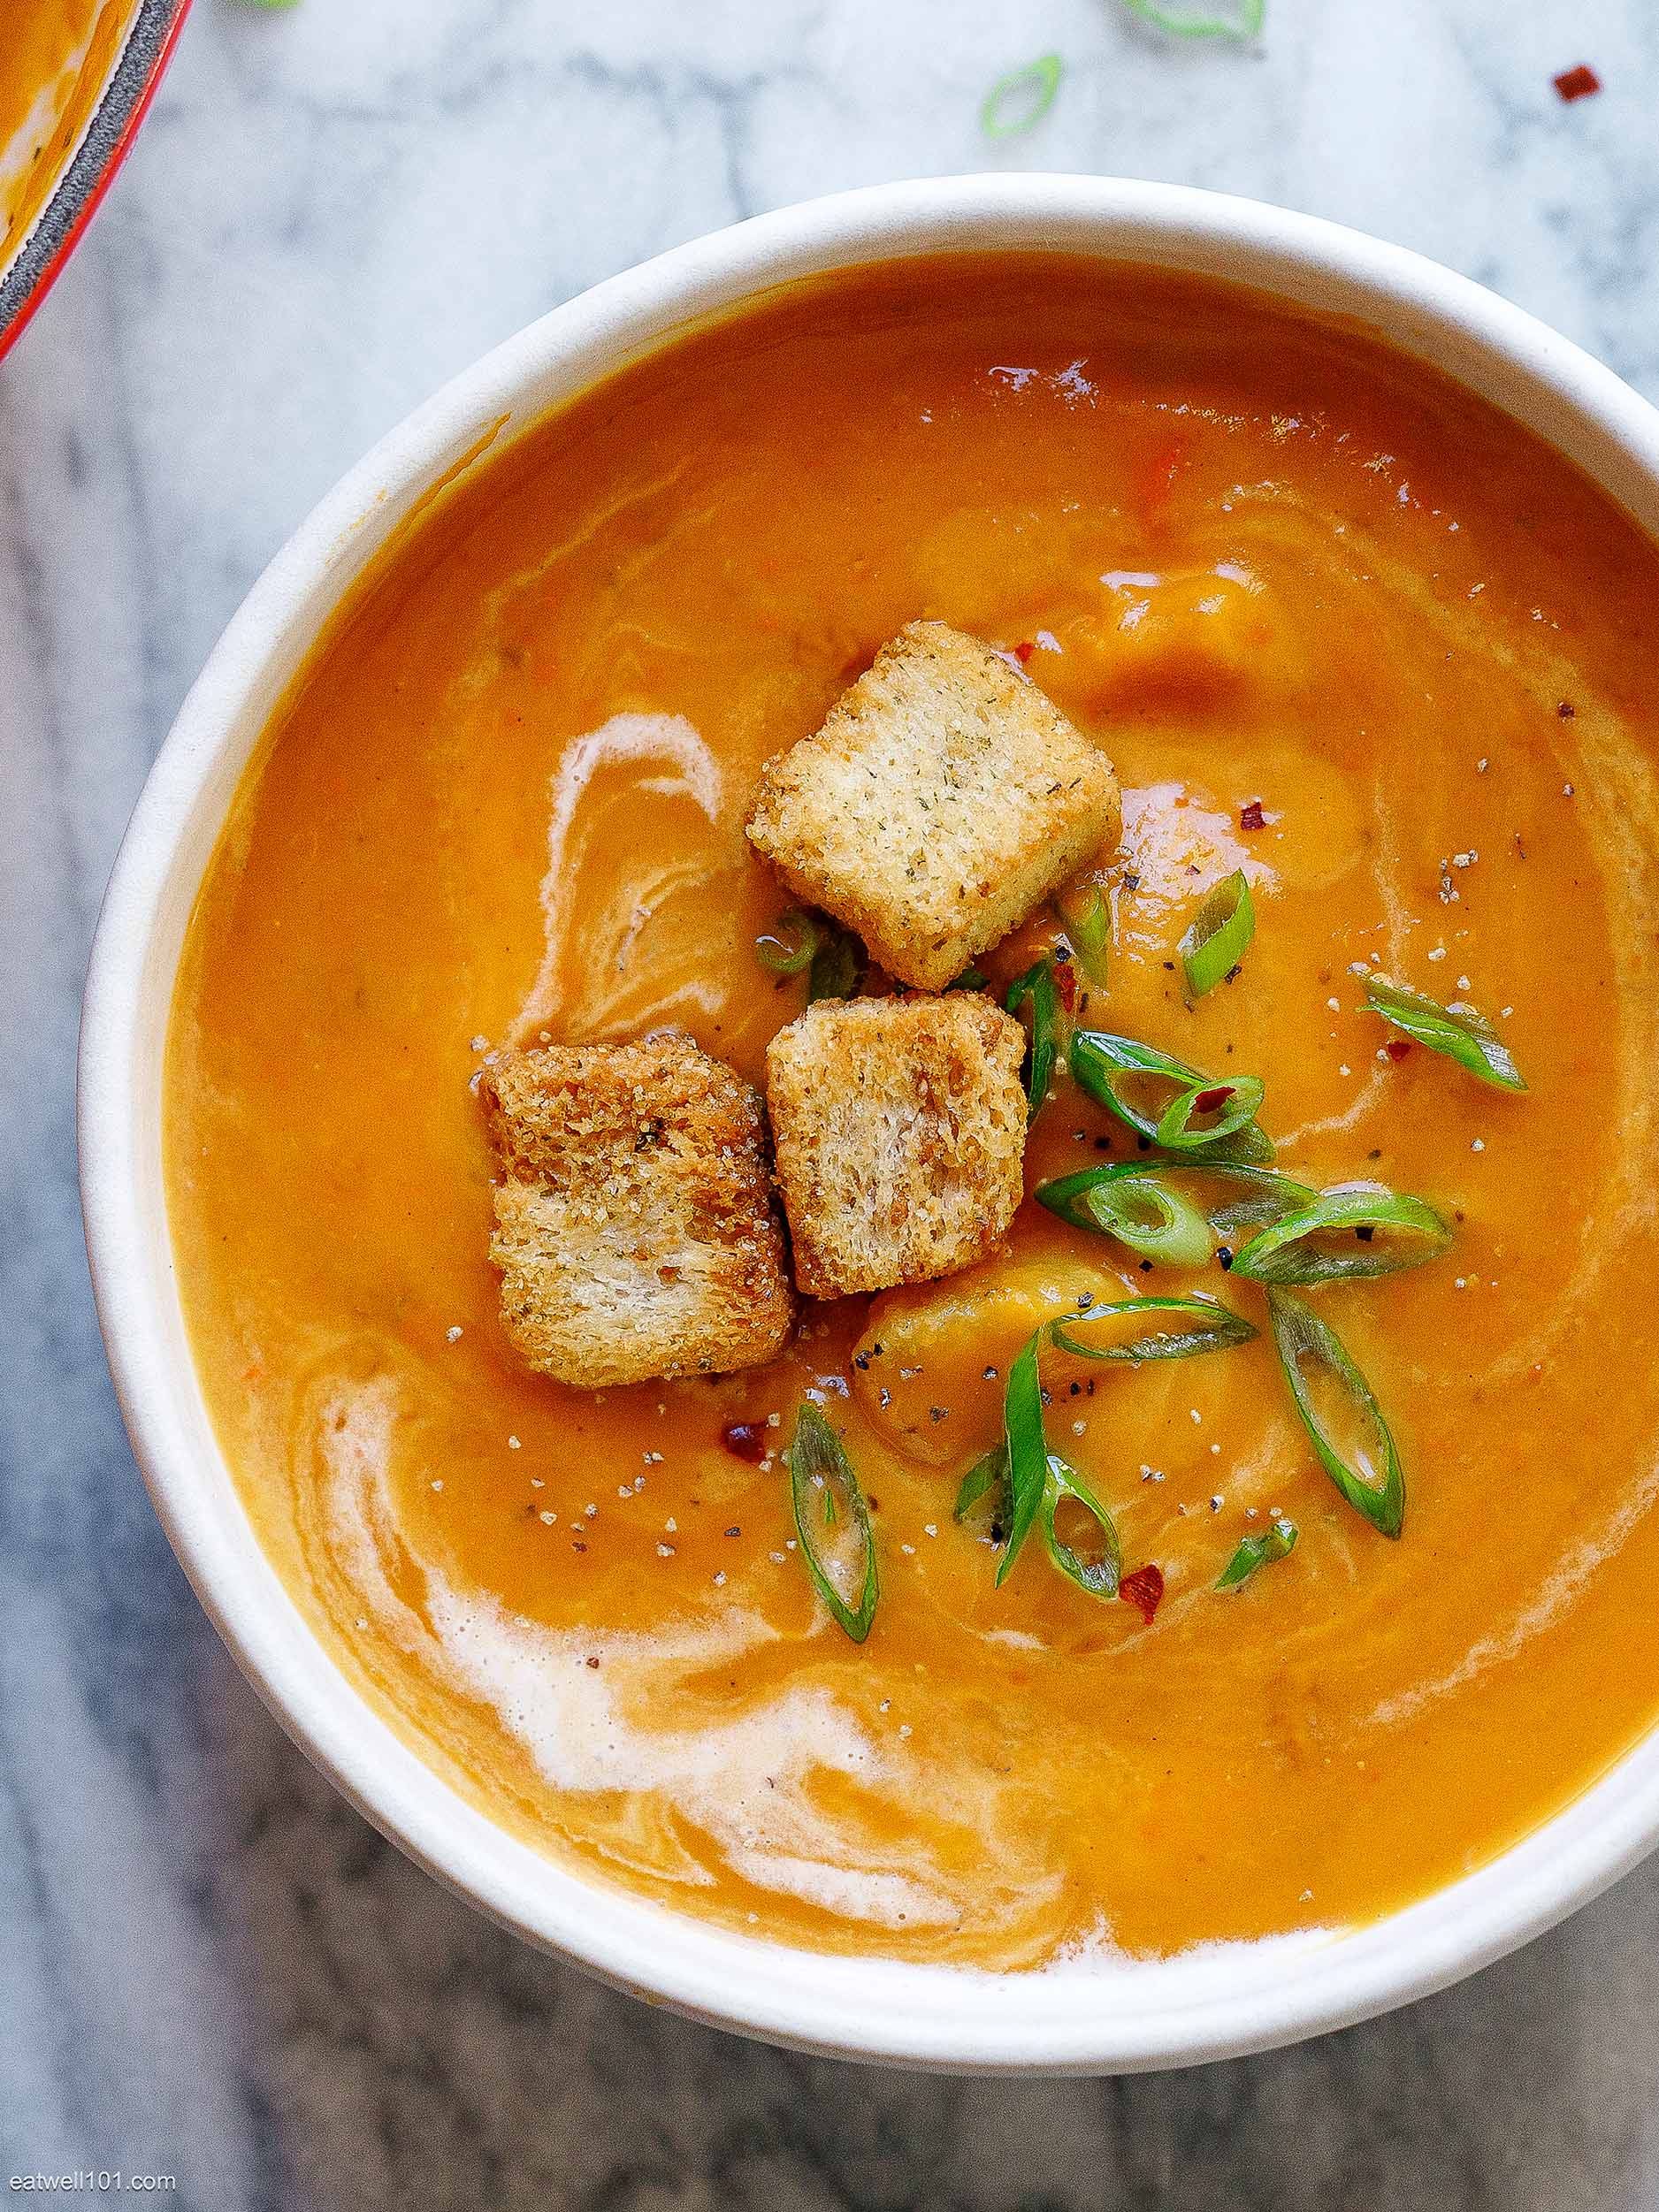 https://www.eatwell101.com/wp-content/uploads/2021/10/curried-pumpkin-soup-recipe.jpg